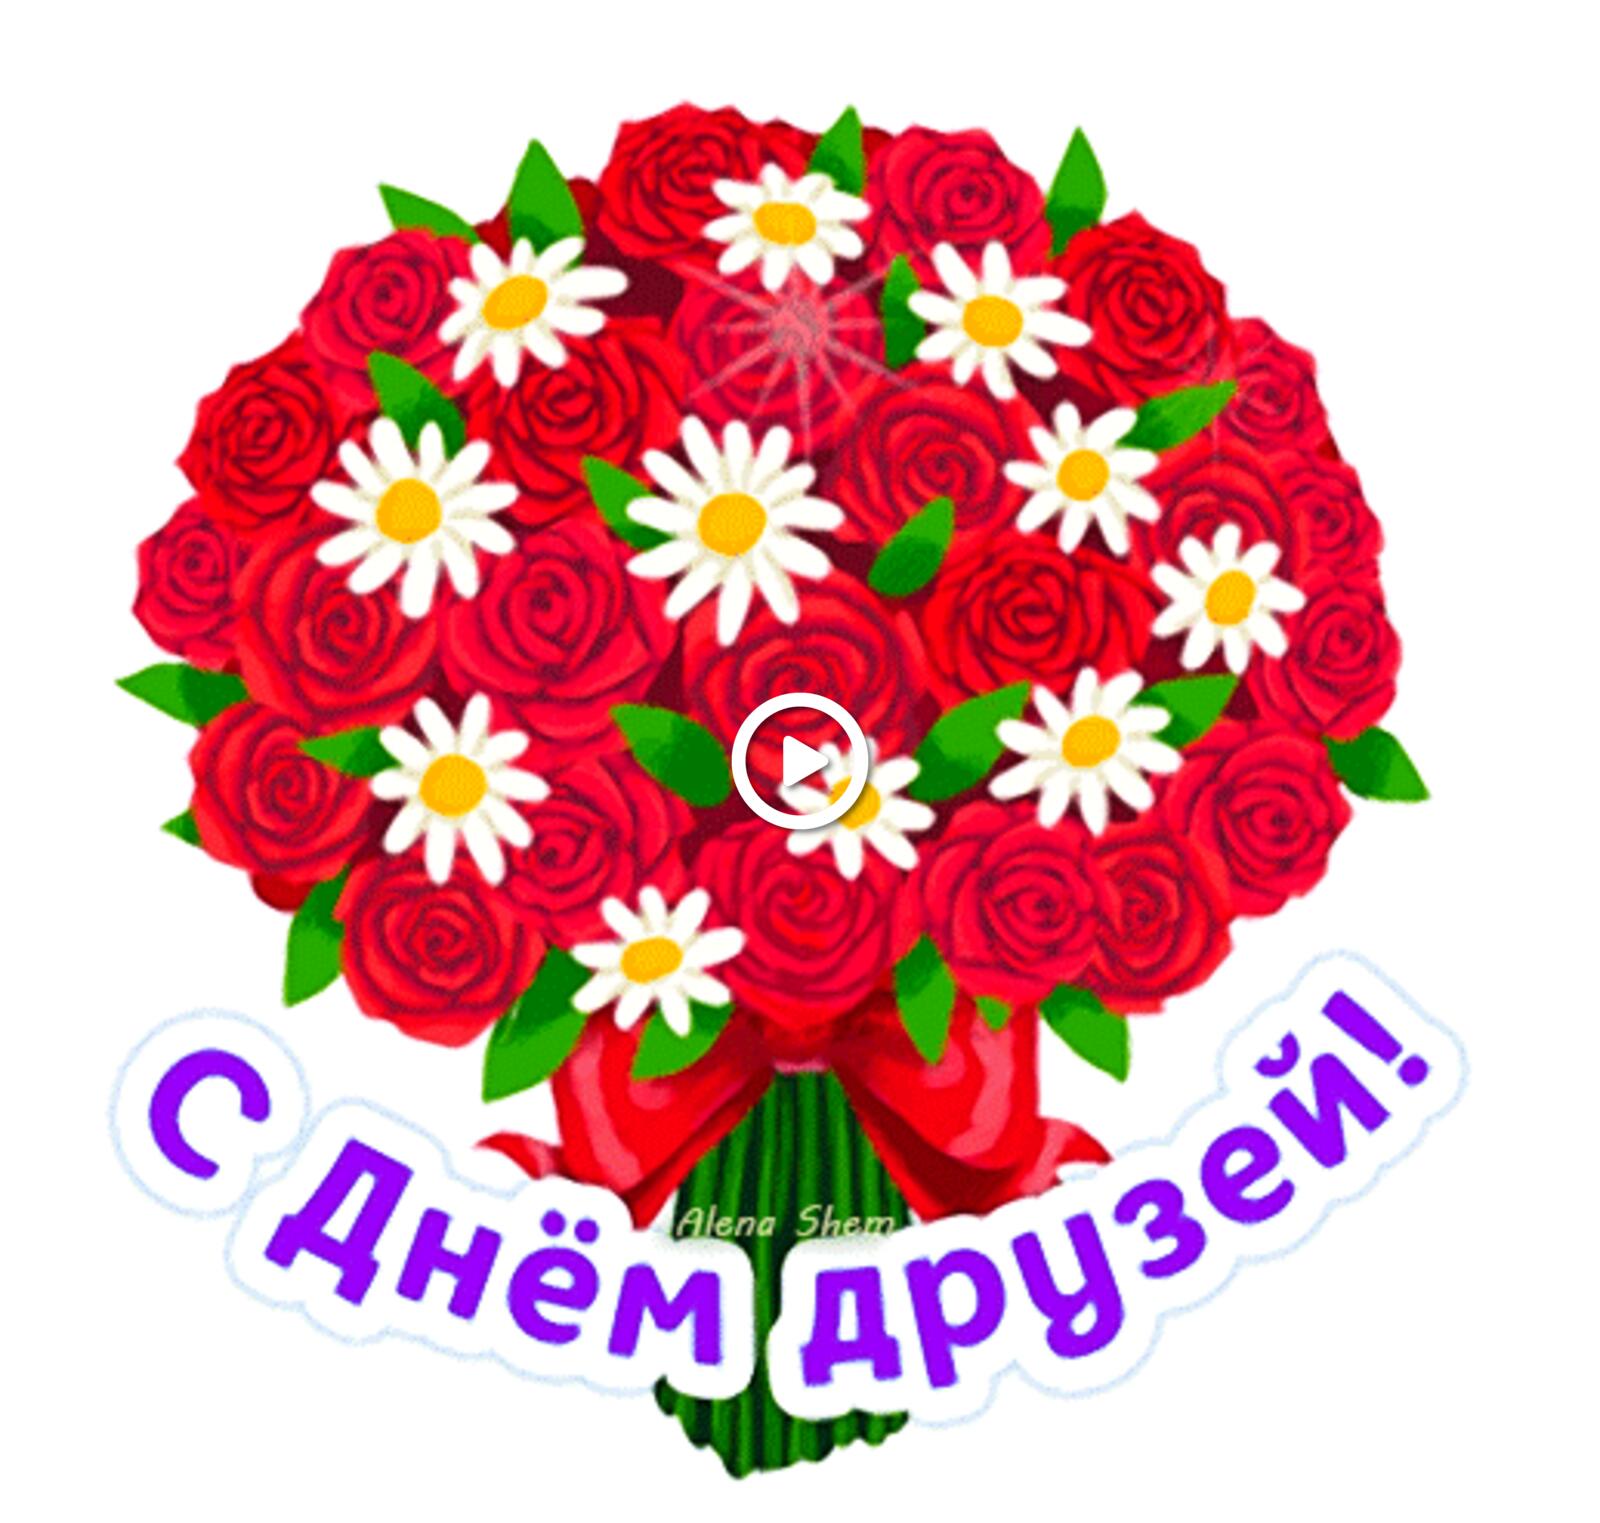 一张以朋友节 玫瑰花束 鲜花为主题的明信片